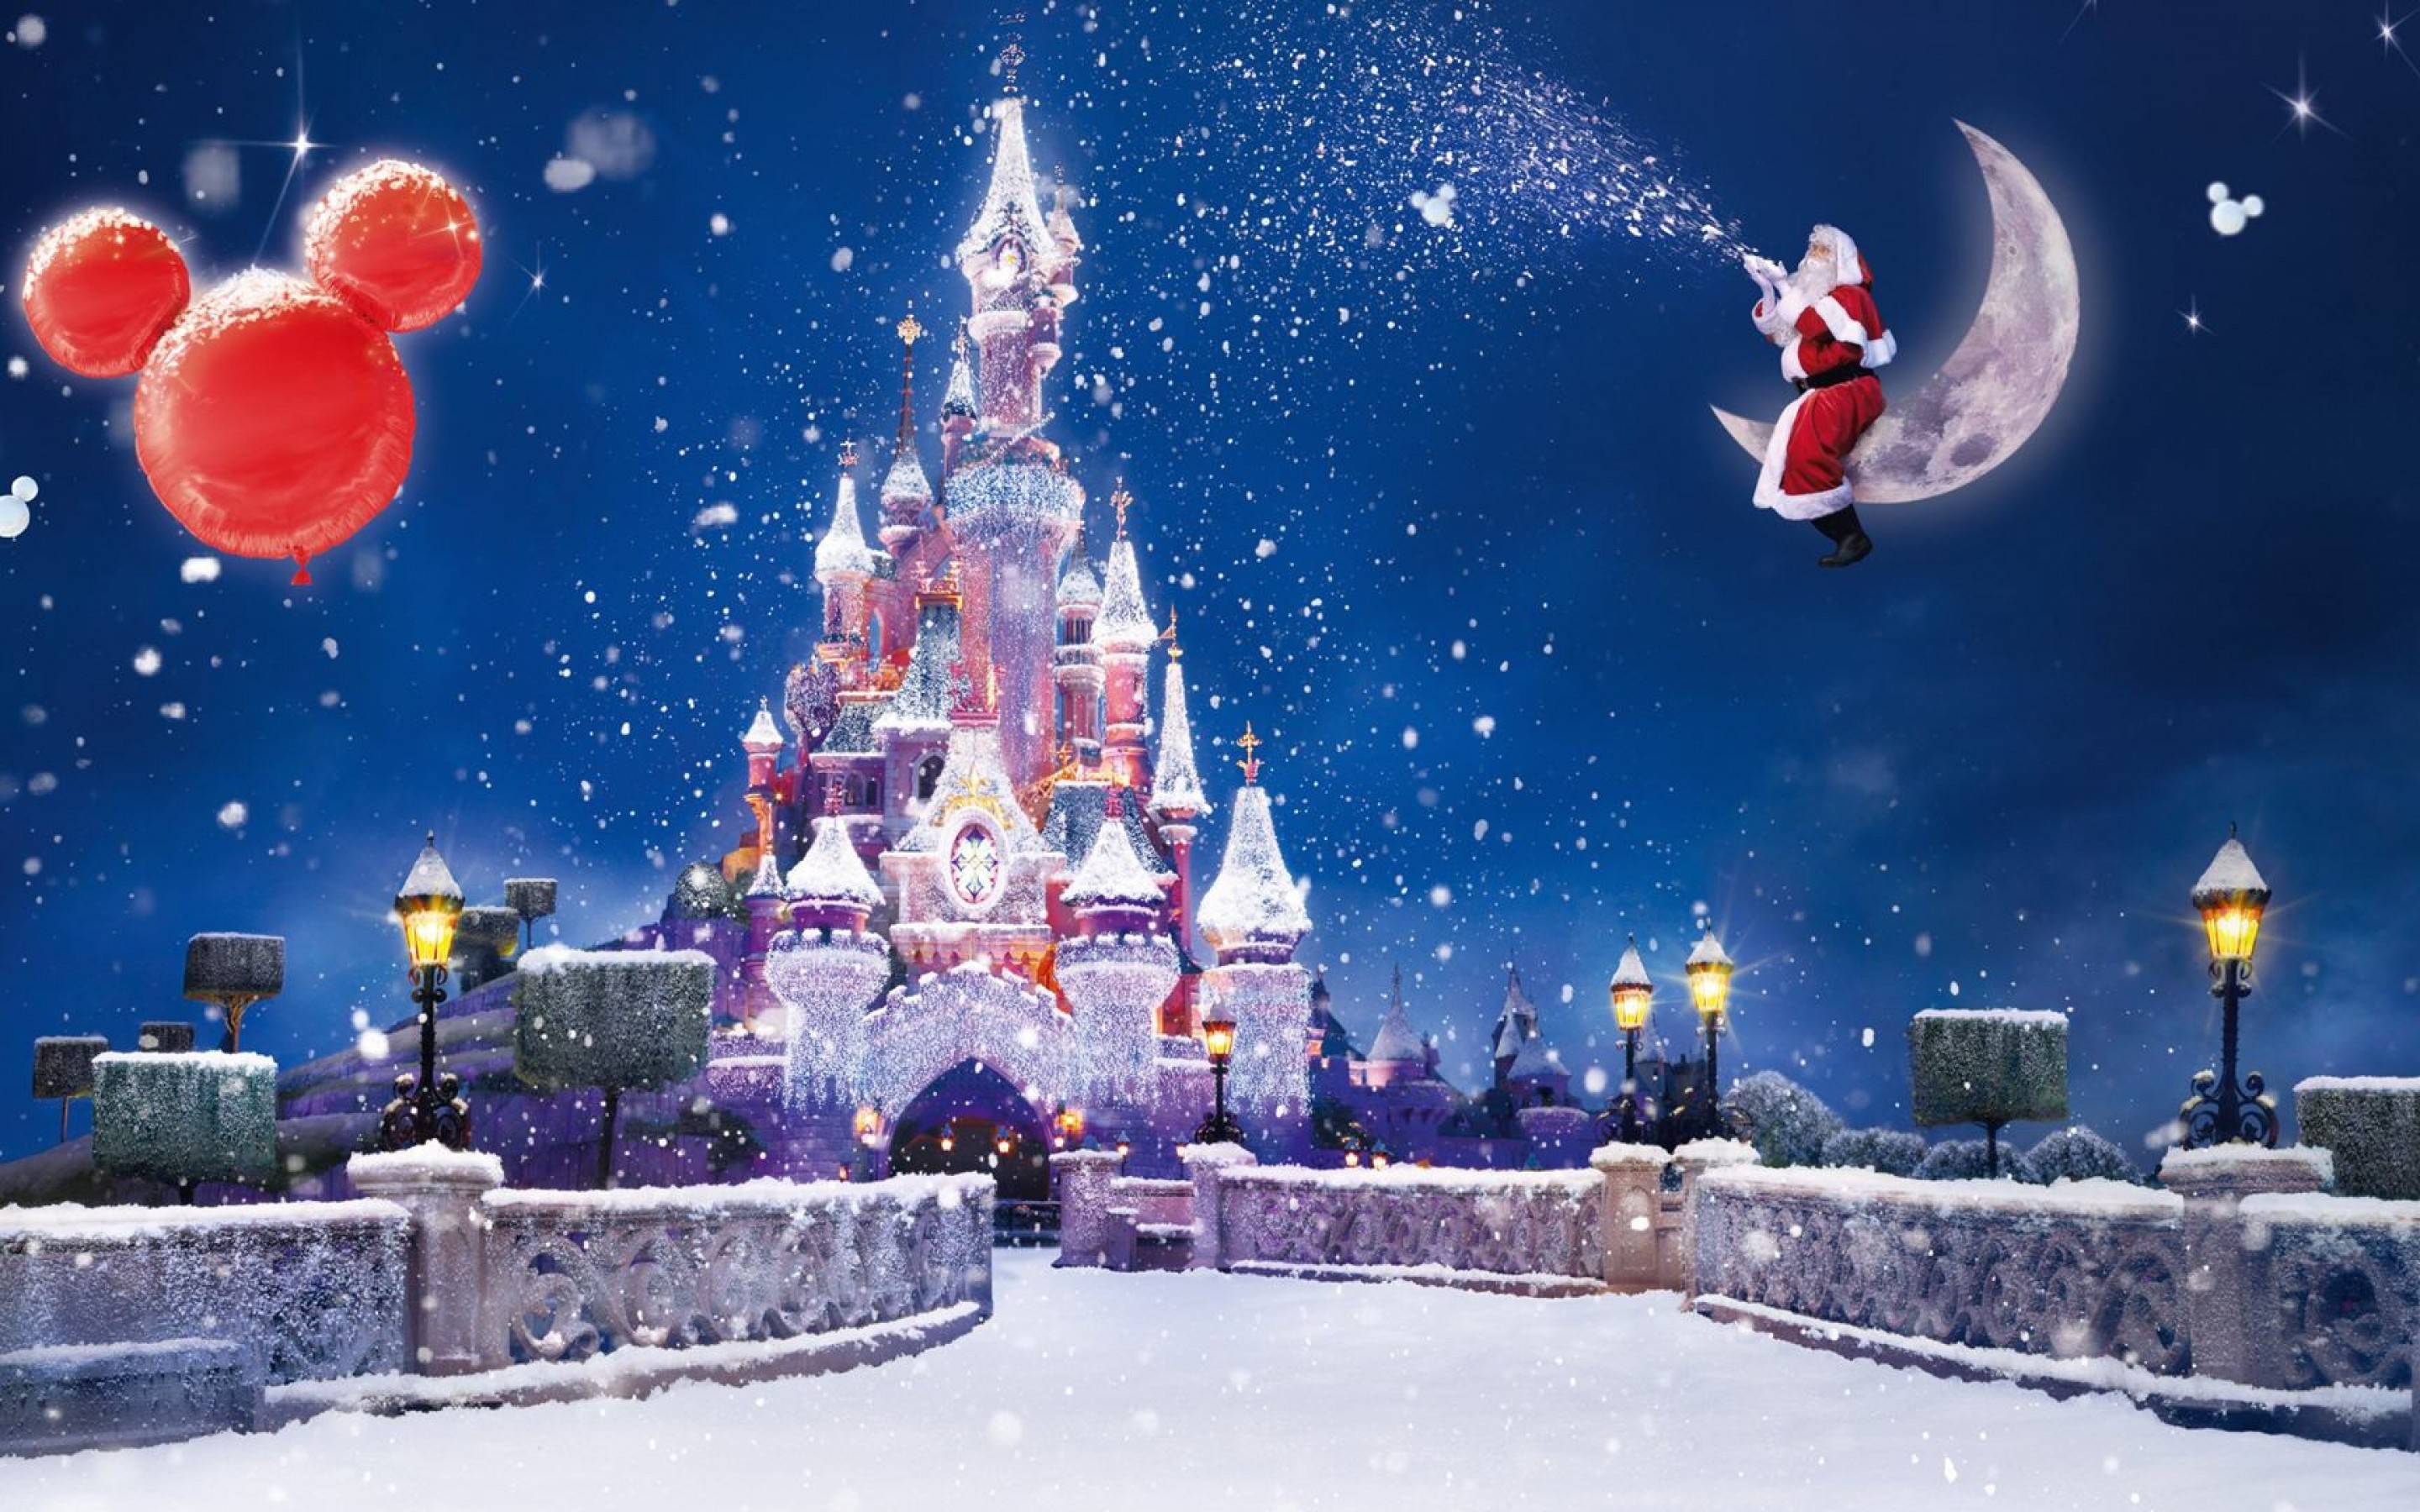 Bạn là một fan của Disney và đang tìm kiếm những hình nền desktop Giáng Sinh Disney đẹp mắt? Hãy tham gia truy cập vào bộ sưu tập miễn phí này của Disney và khám phá những hình ảnh kỳ diệu và đầy phép thuật. Hãy để máy tính của bạn lung linh trong không khí Giáng Sinh cùng với nhân vật Disney yêu thích của bạn.